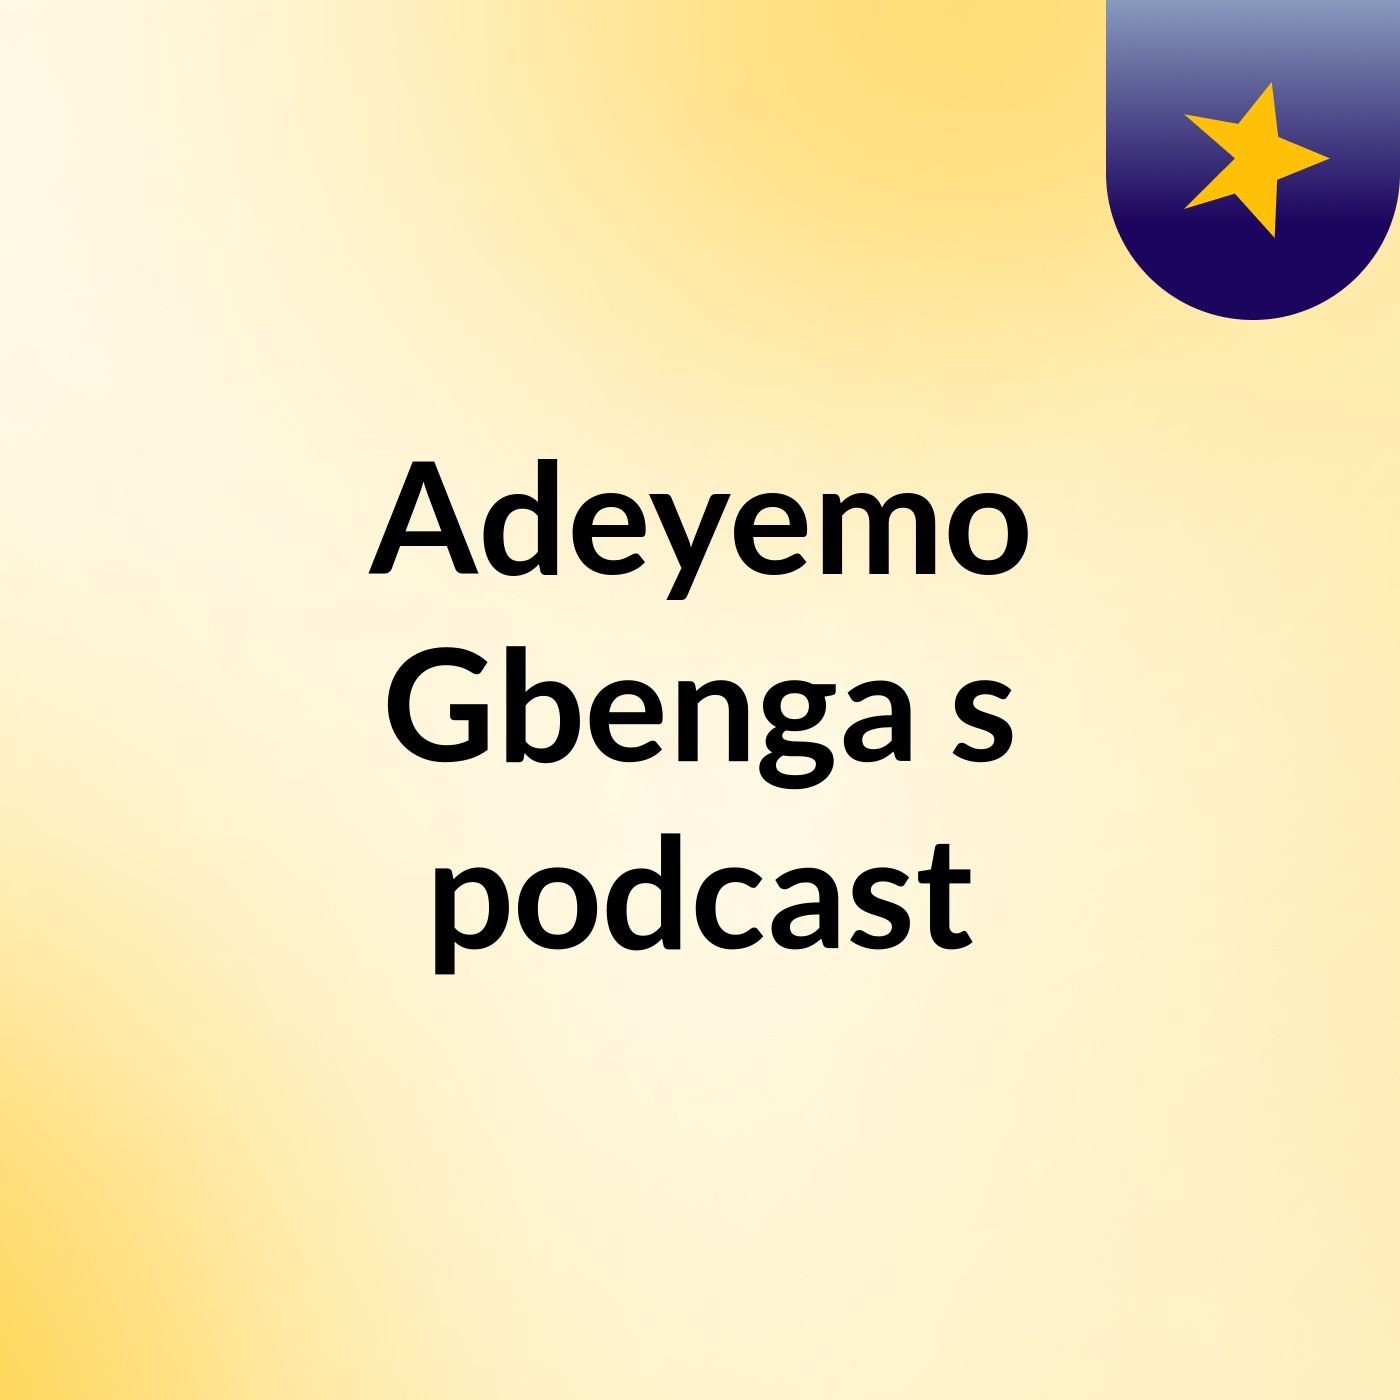 Adeyemo Gbenga's podcast